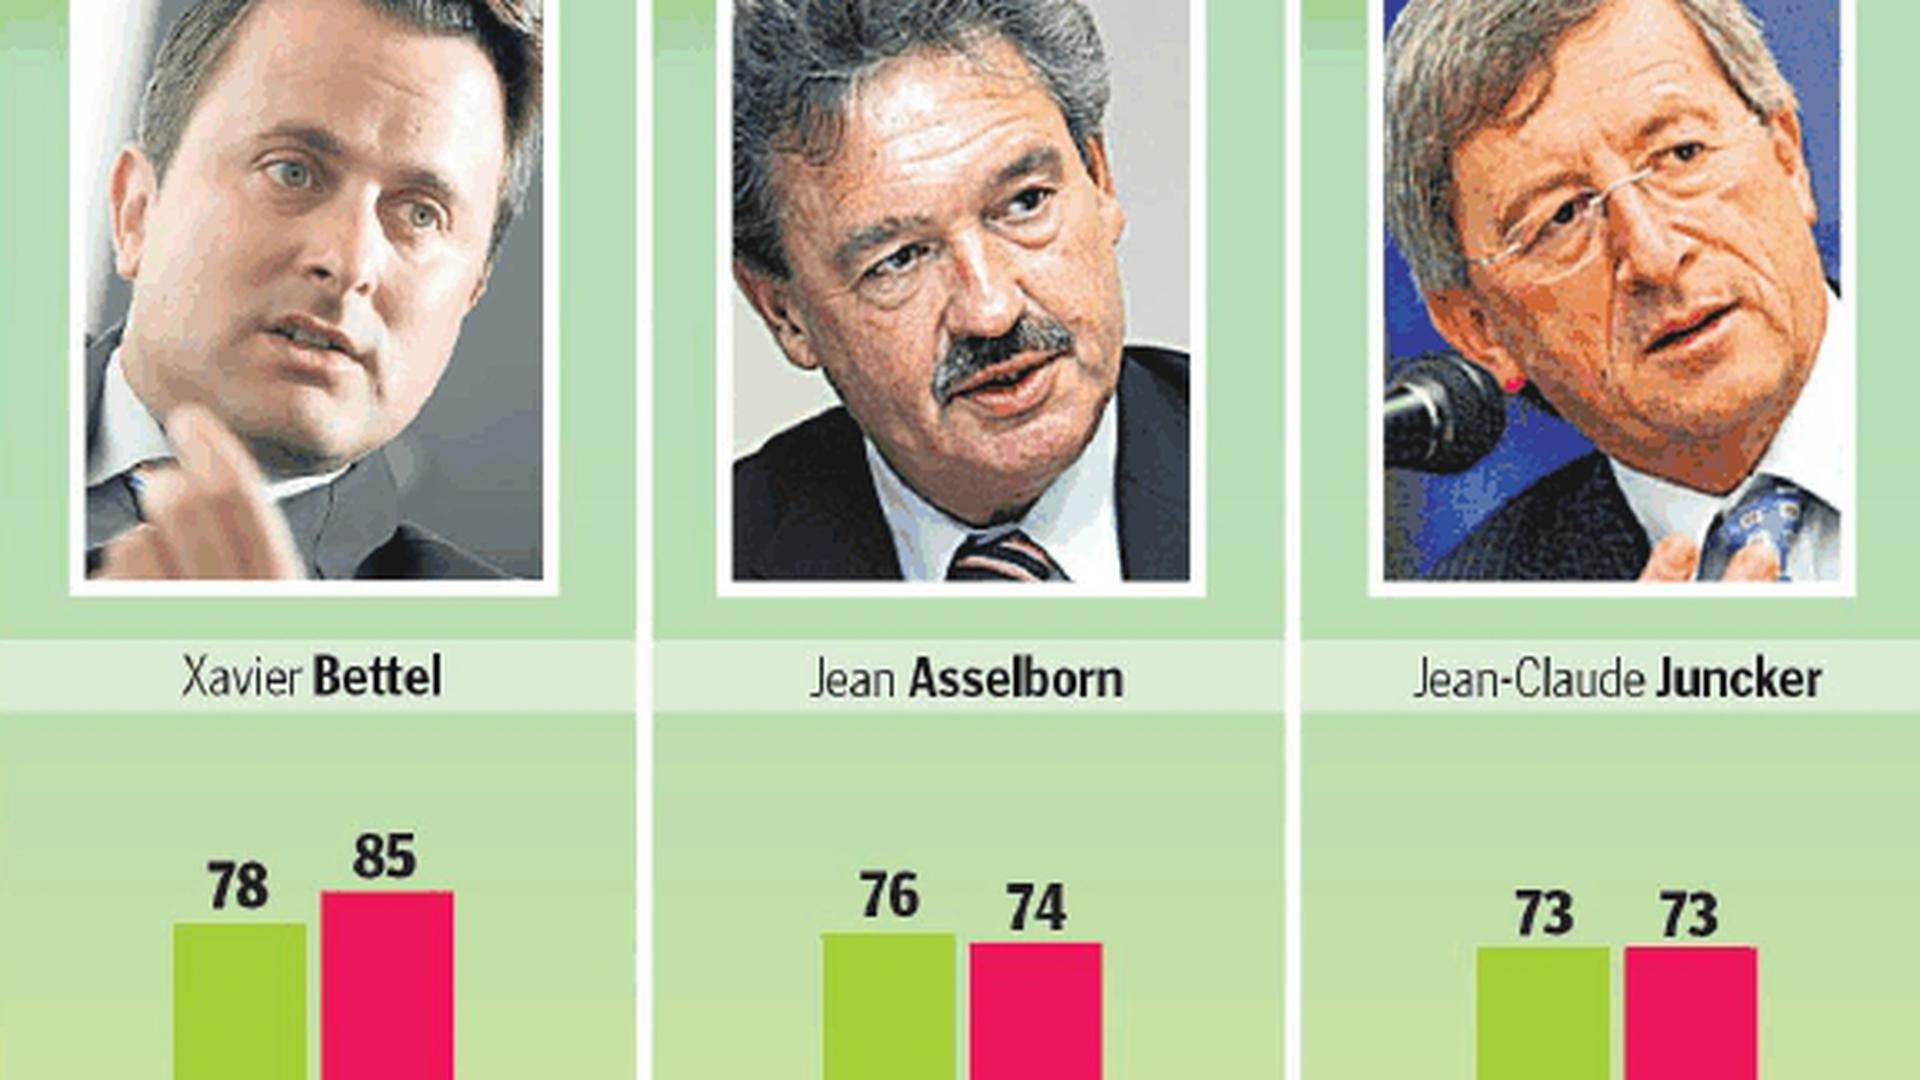 Xavier Bettel lidera a popularidade com 75%, apesar de ter obtido melhor resultado em Abril passado (85%)